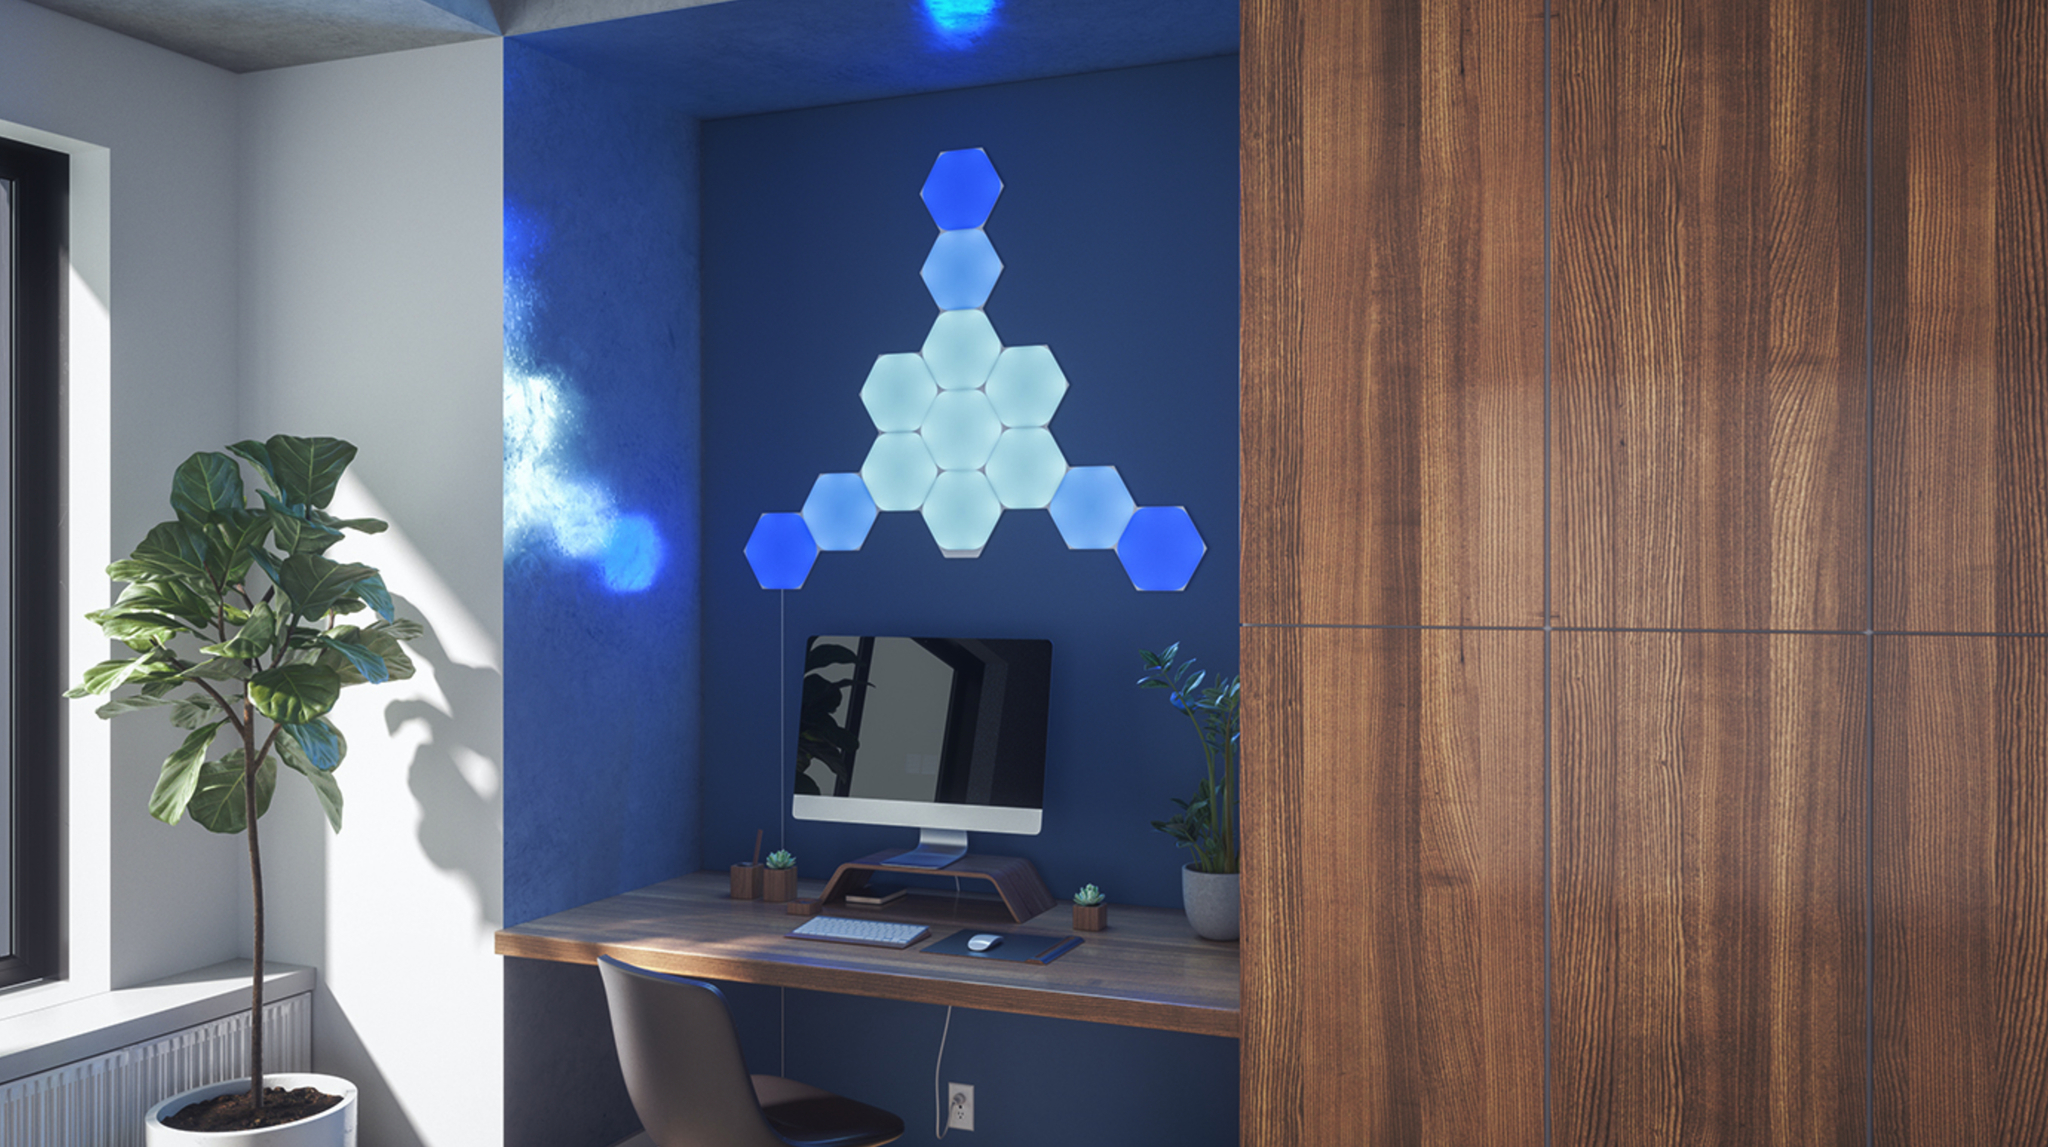 Nanoleaf Hexagons installed above a desk